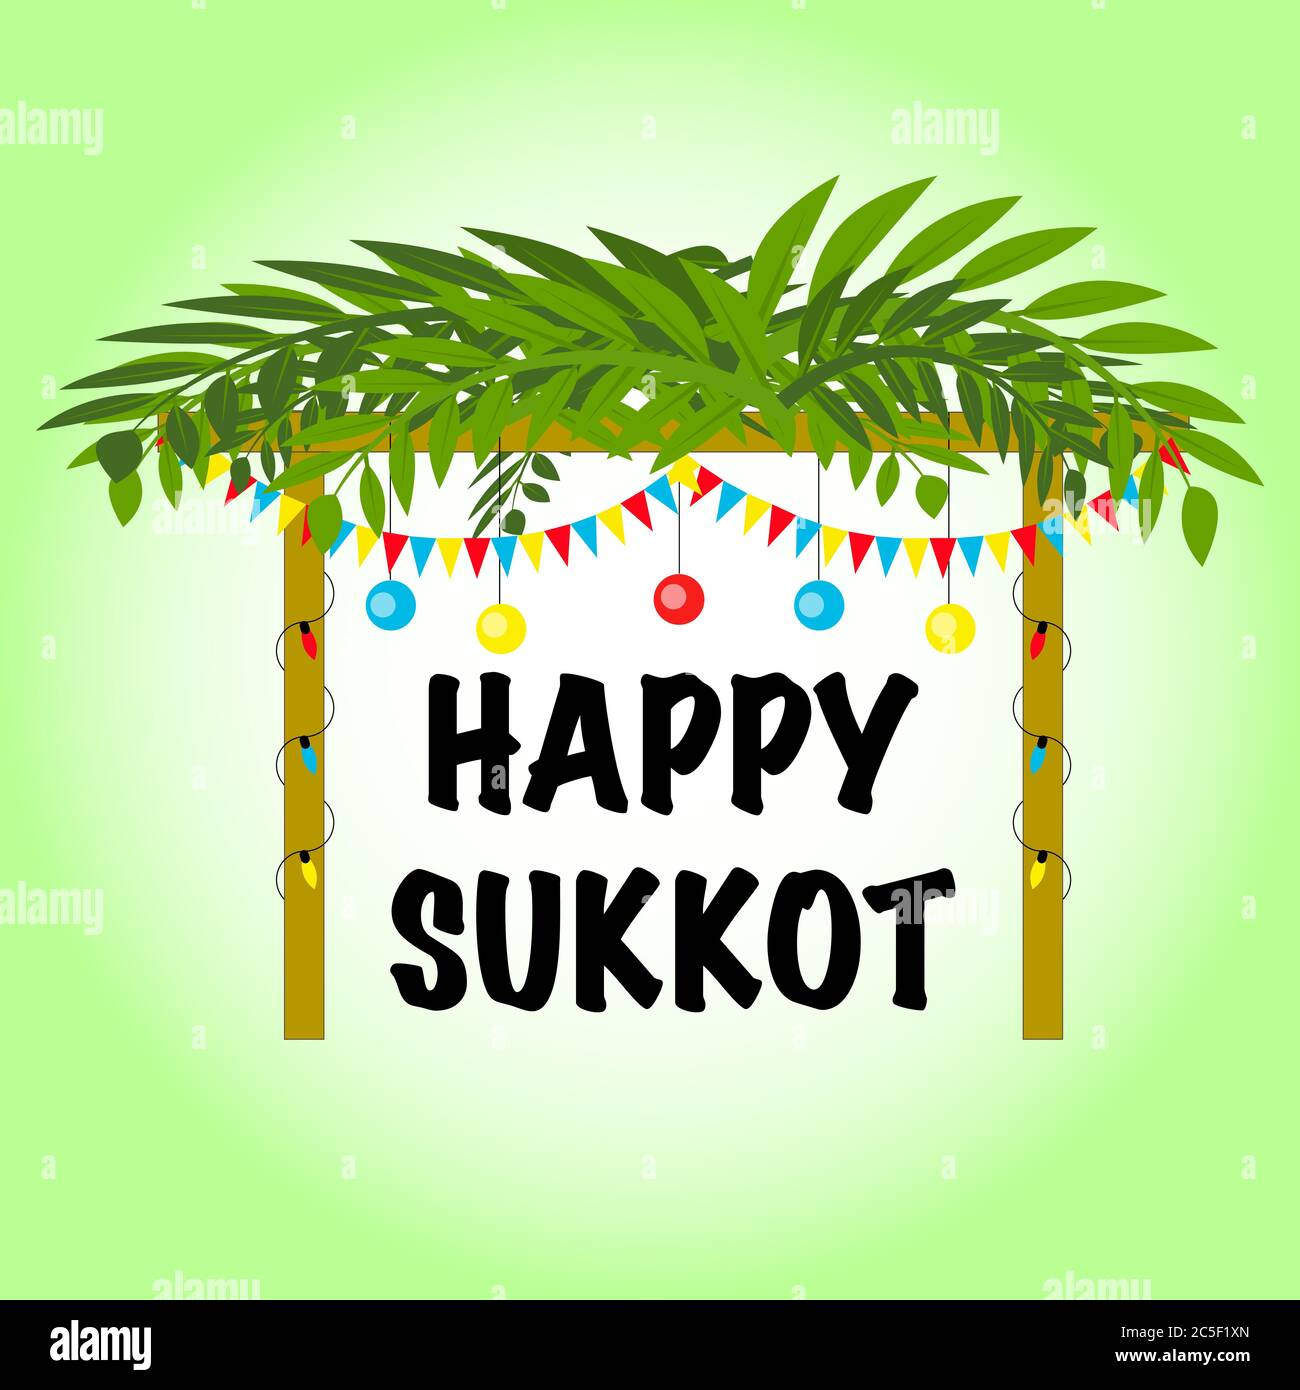 Happy sukkot hi